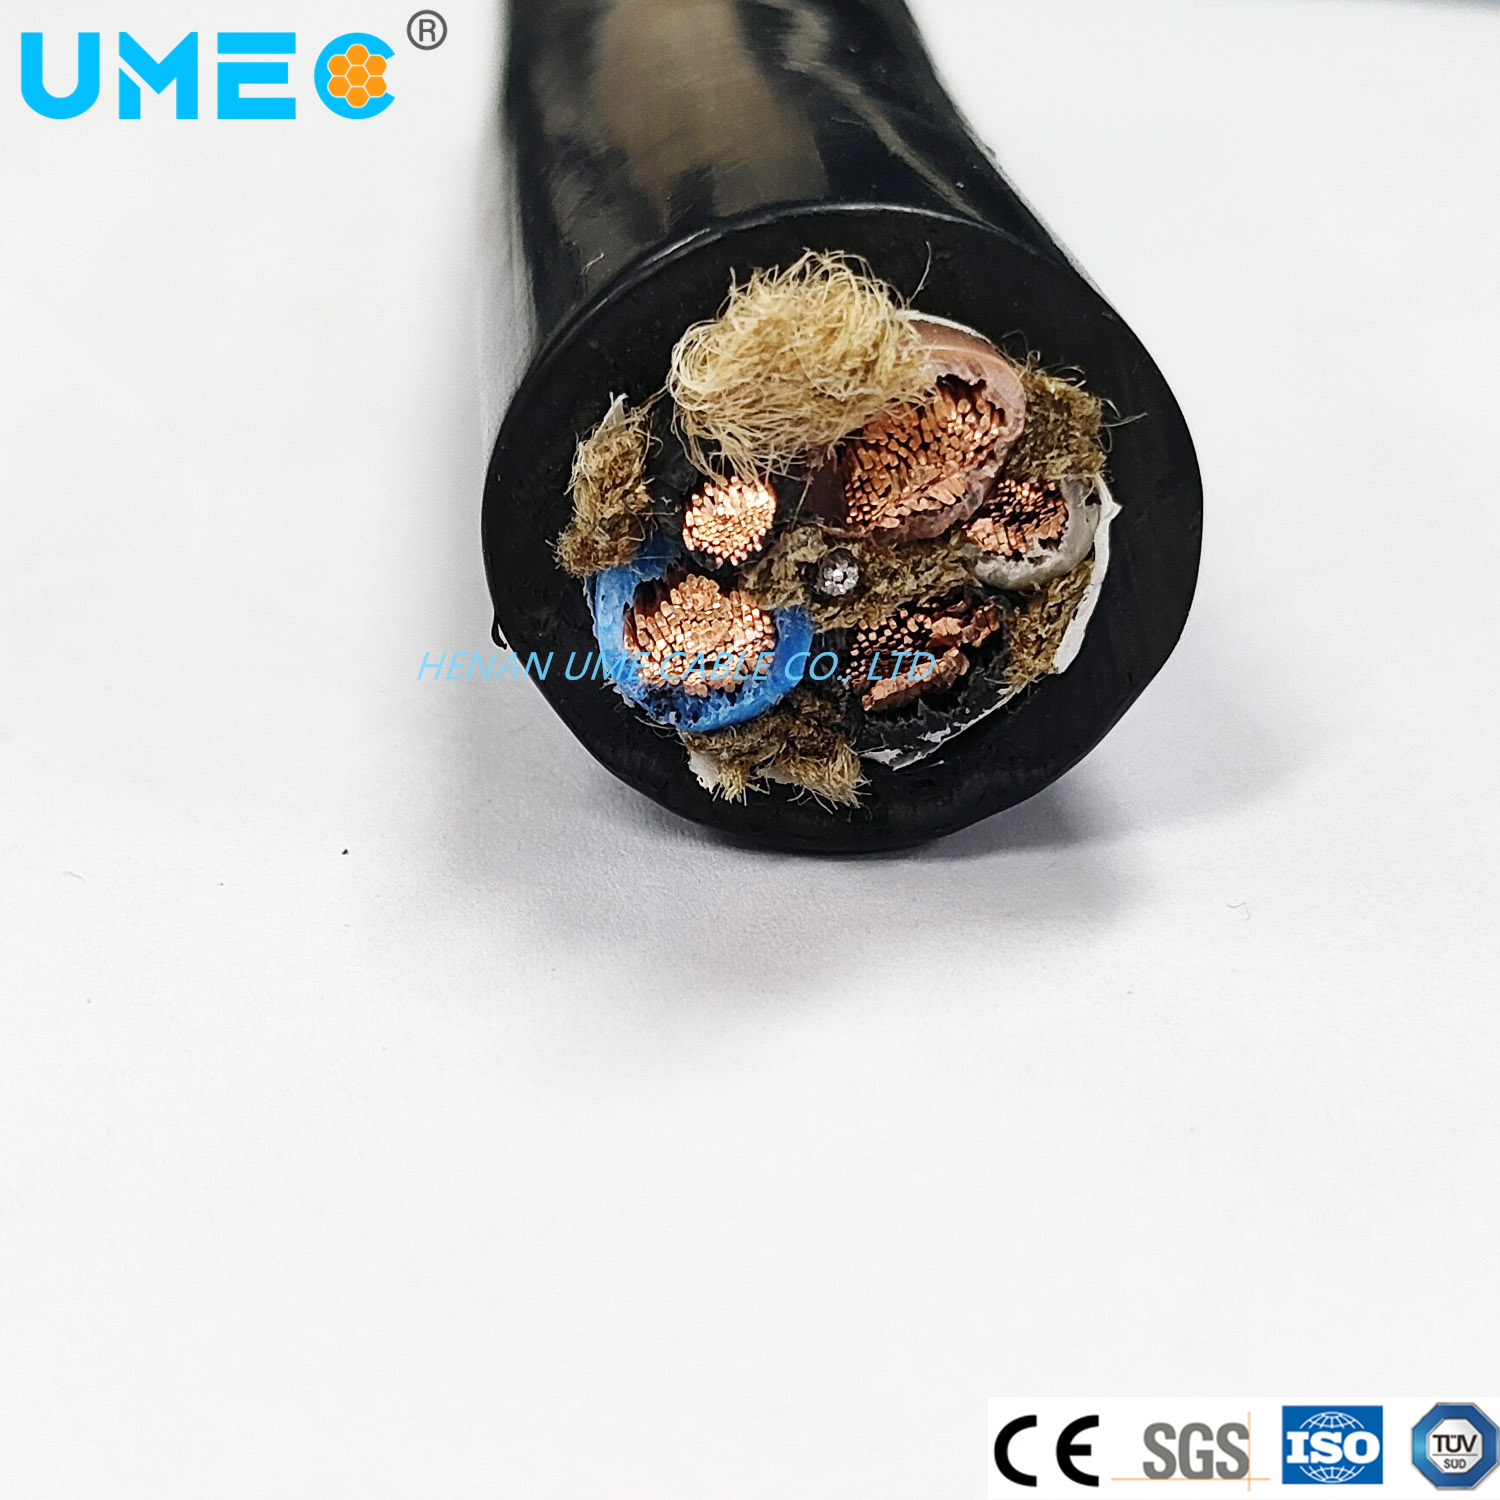 
                Стандарт IEC резины EPDM CPE ОРЭД ПВХ эластомер короткого замыкания кабеля 10 12 14 16мм2 электрические резиновый кабель
            